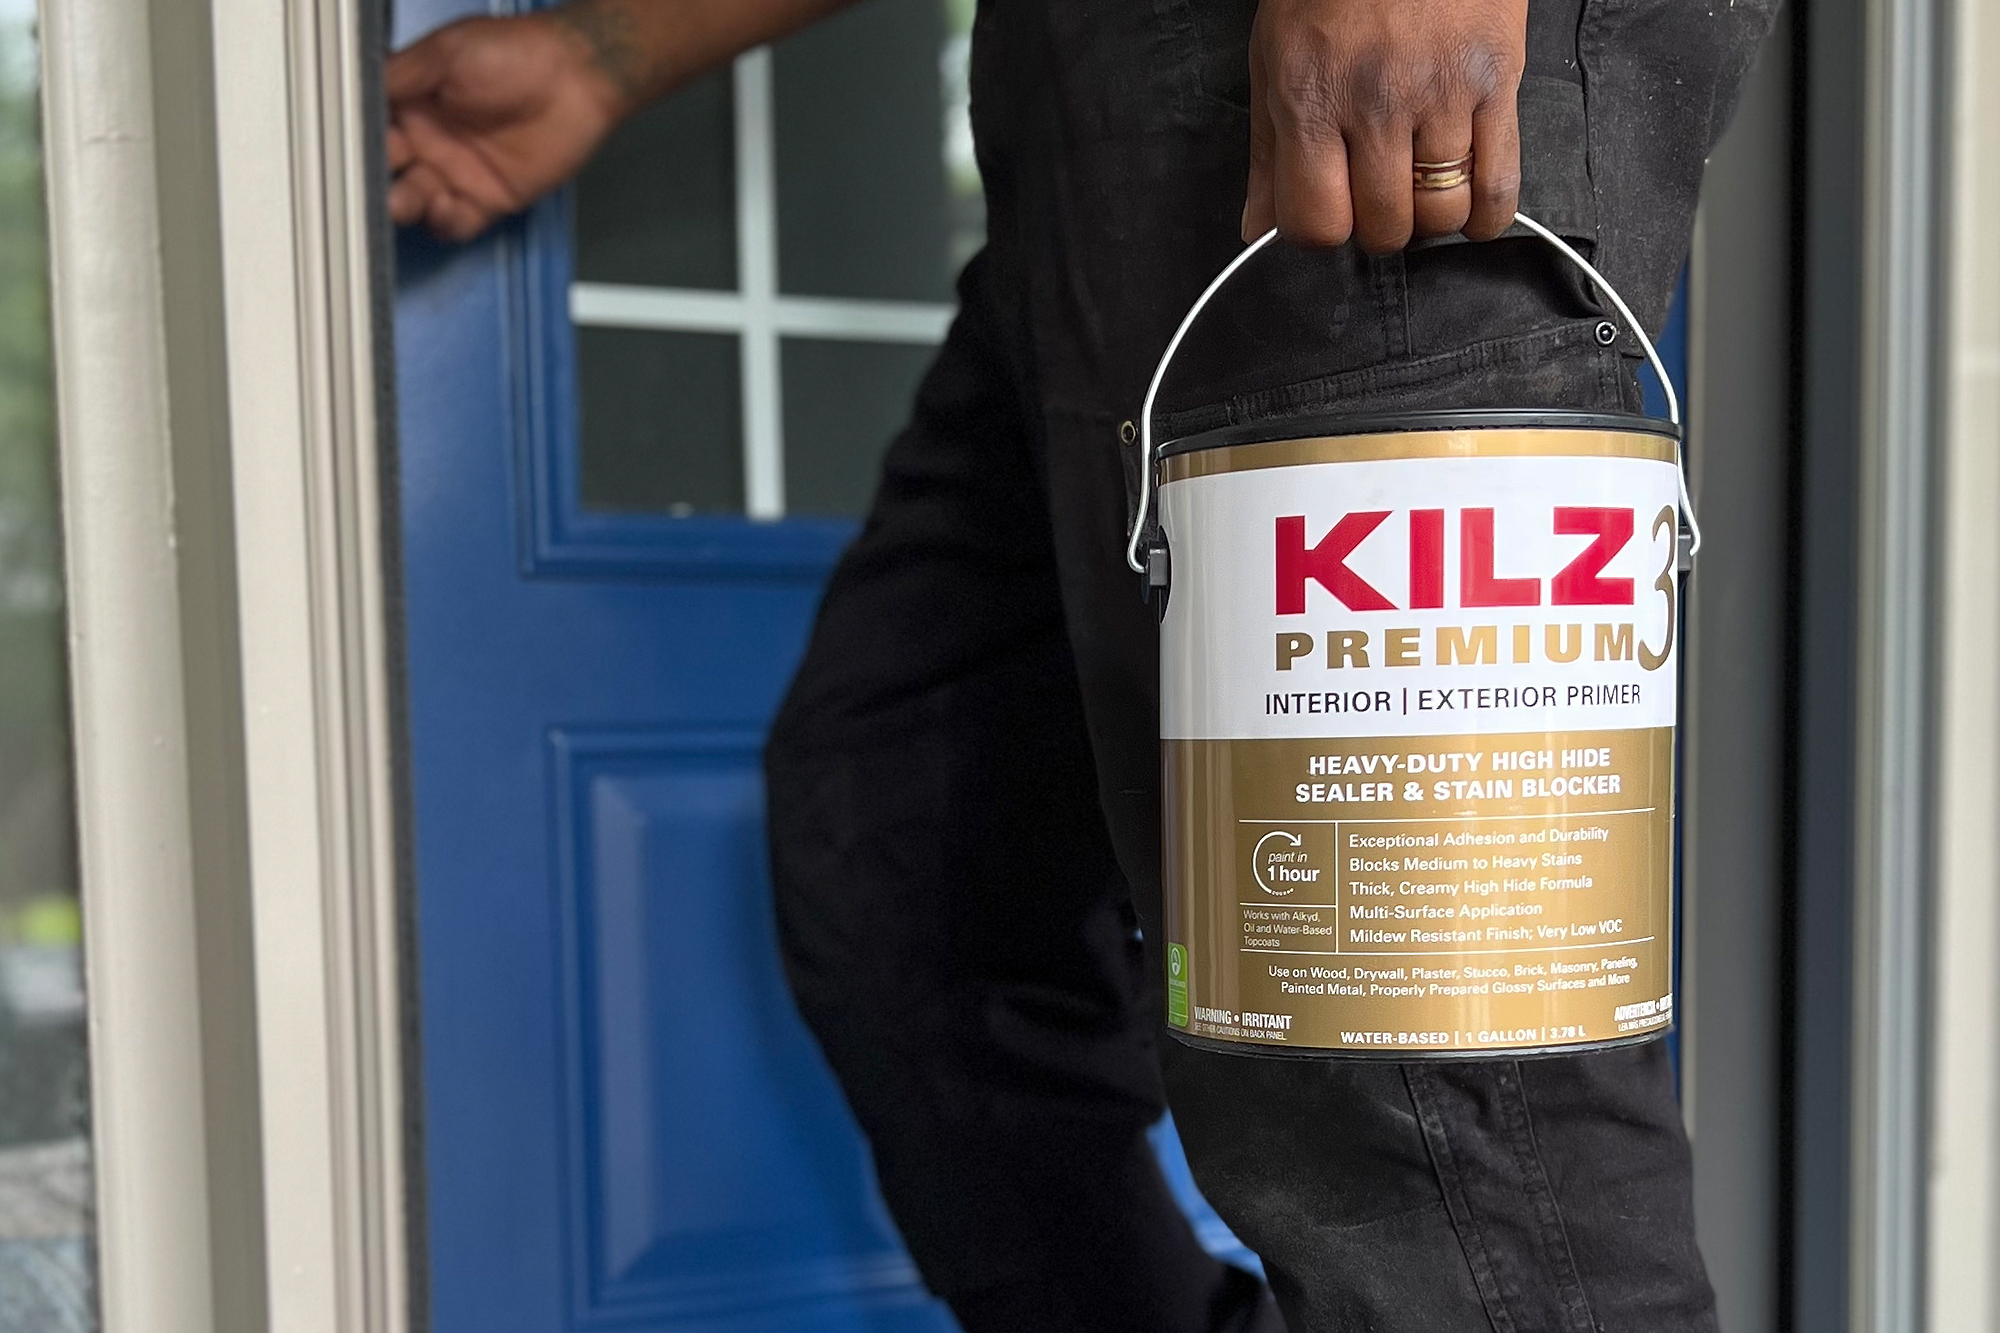 Up close image of KILZ 3 Premium Primer